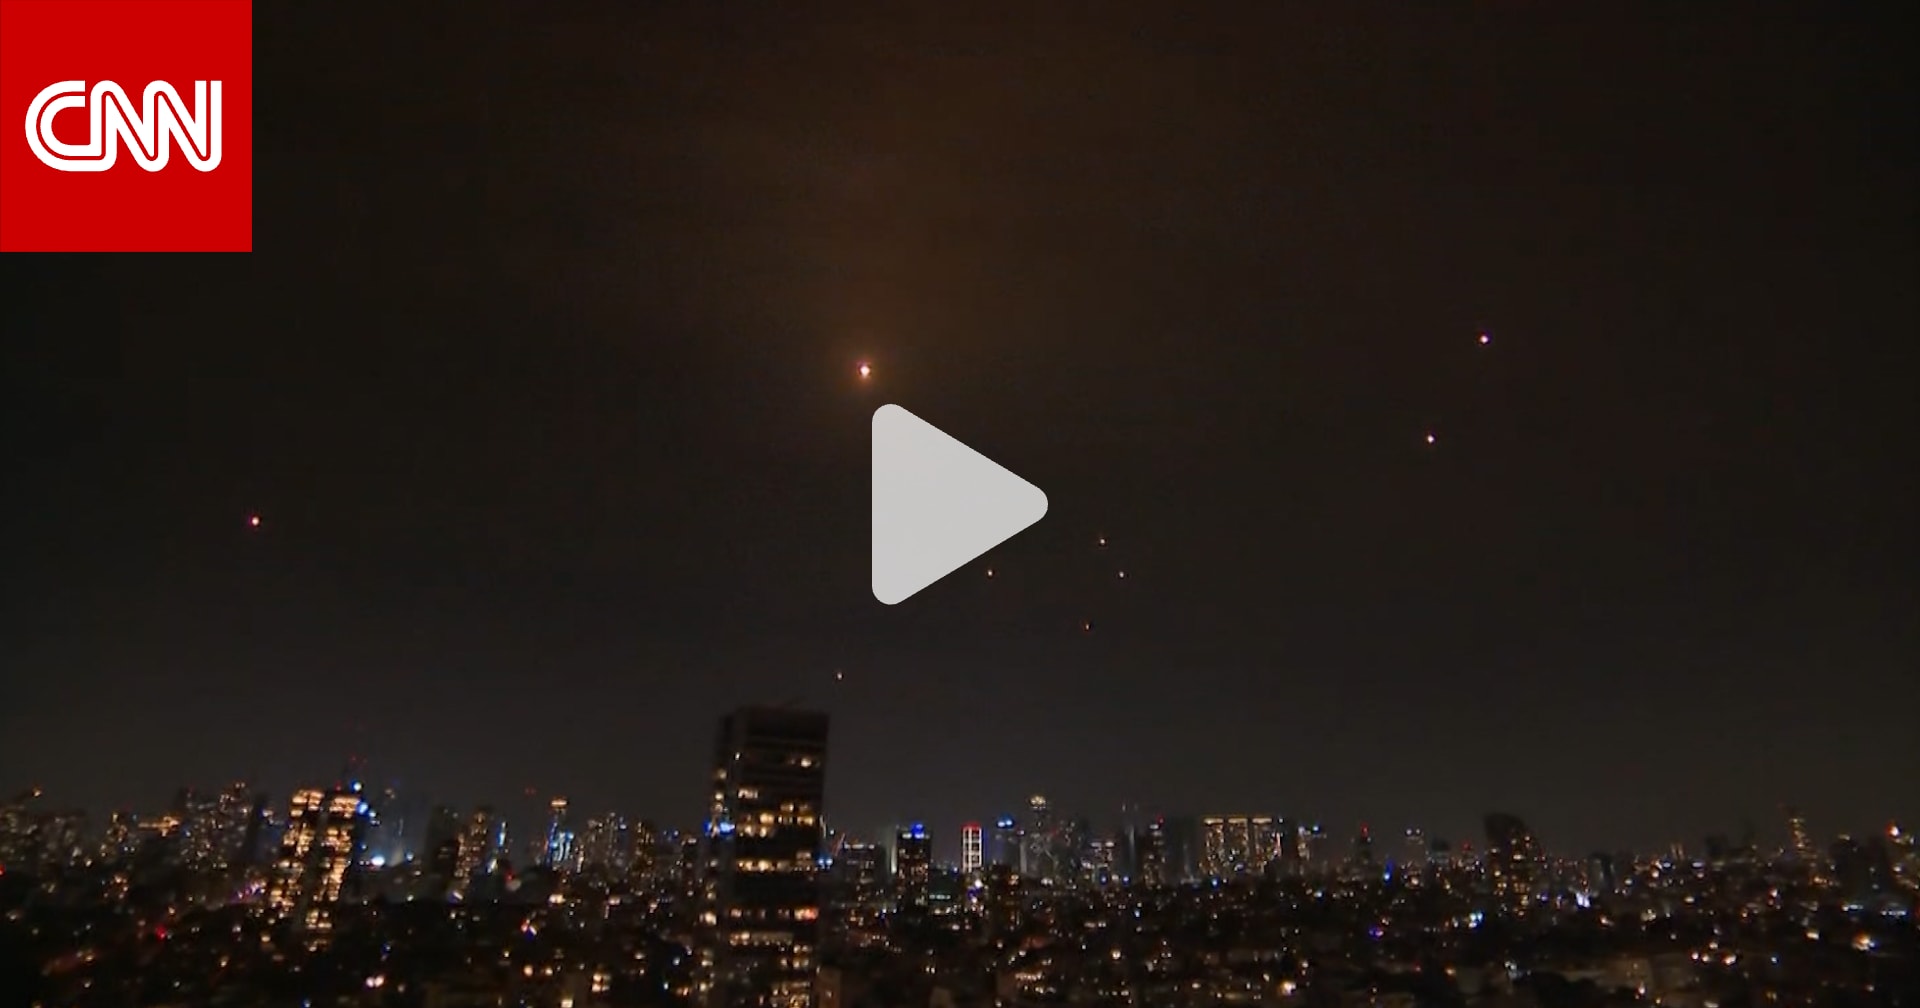 كاميرا CNN ترصد لحظة تعرض تل أبيب لوابل صواريخ